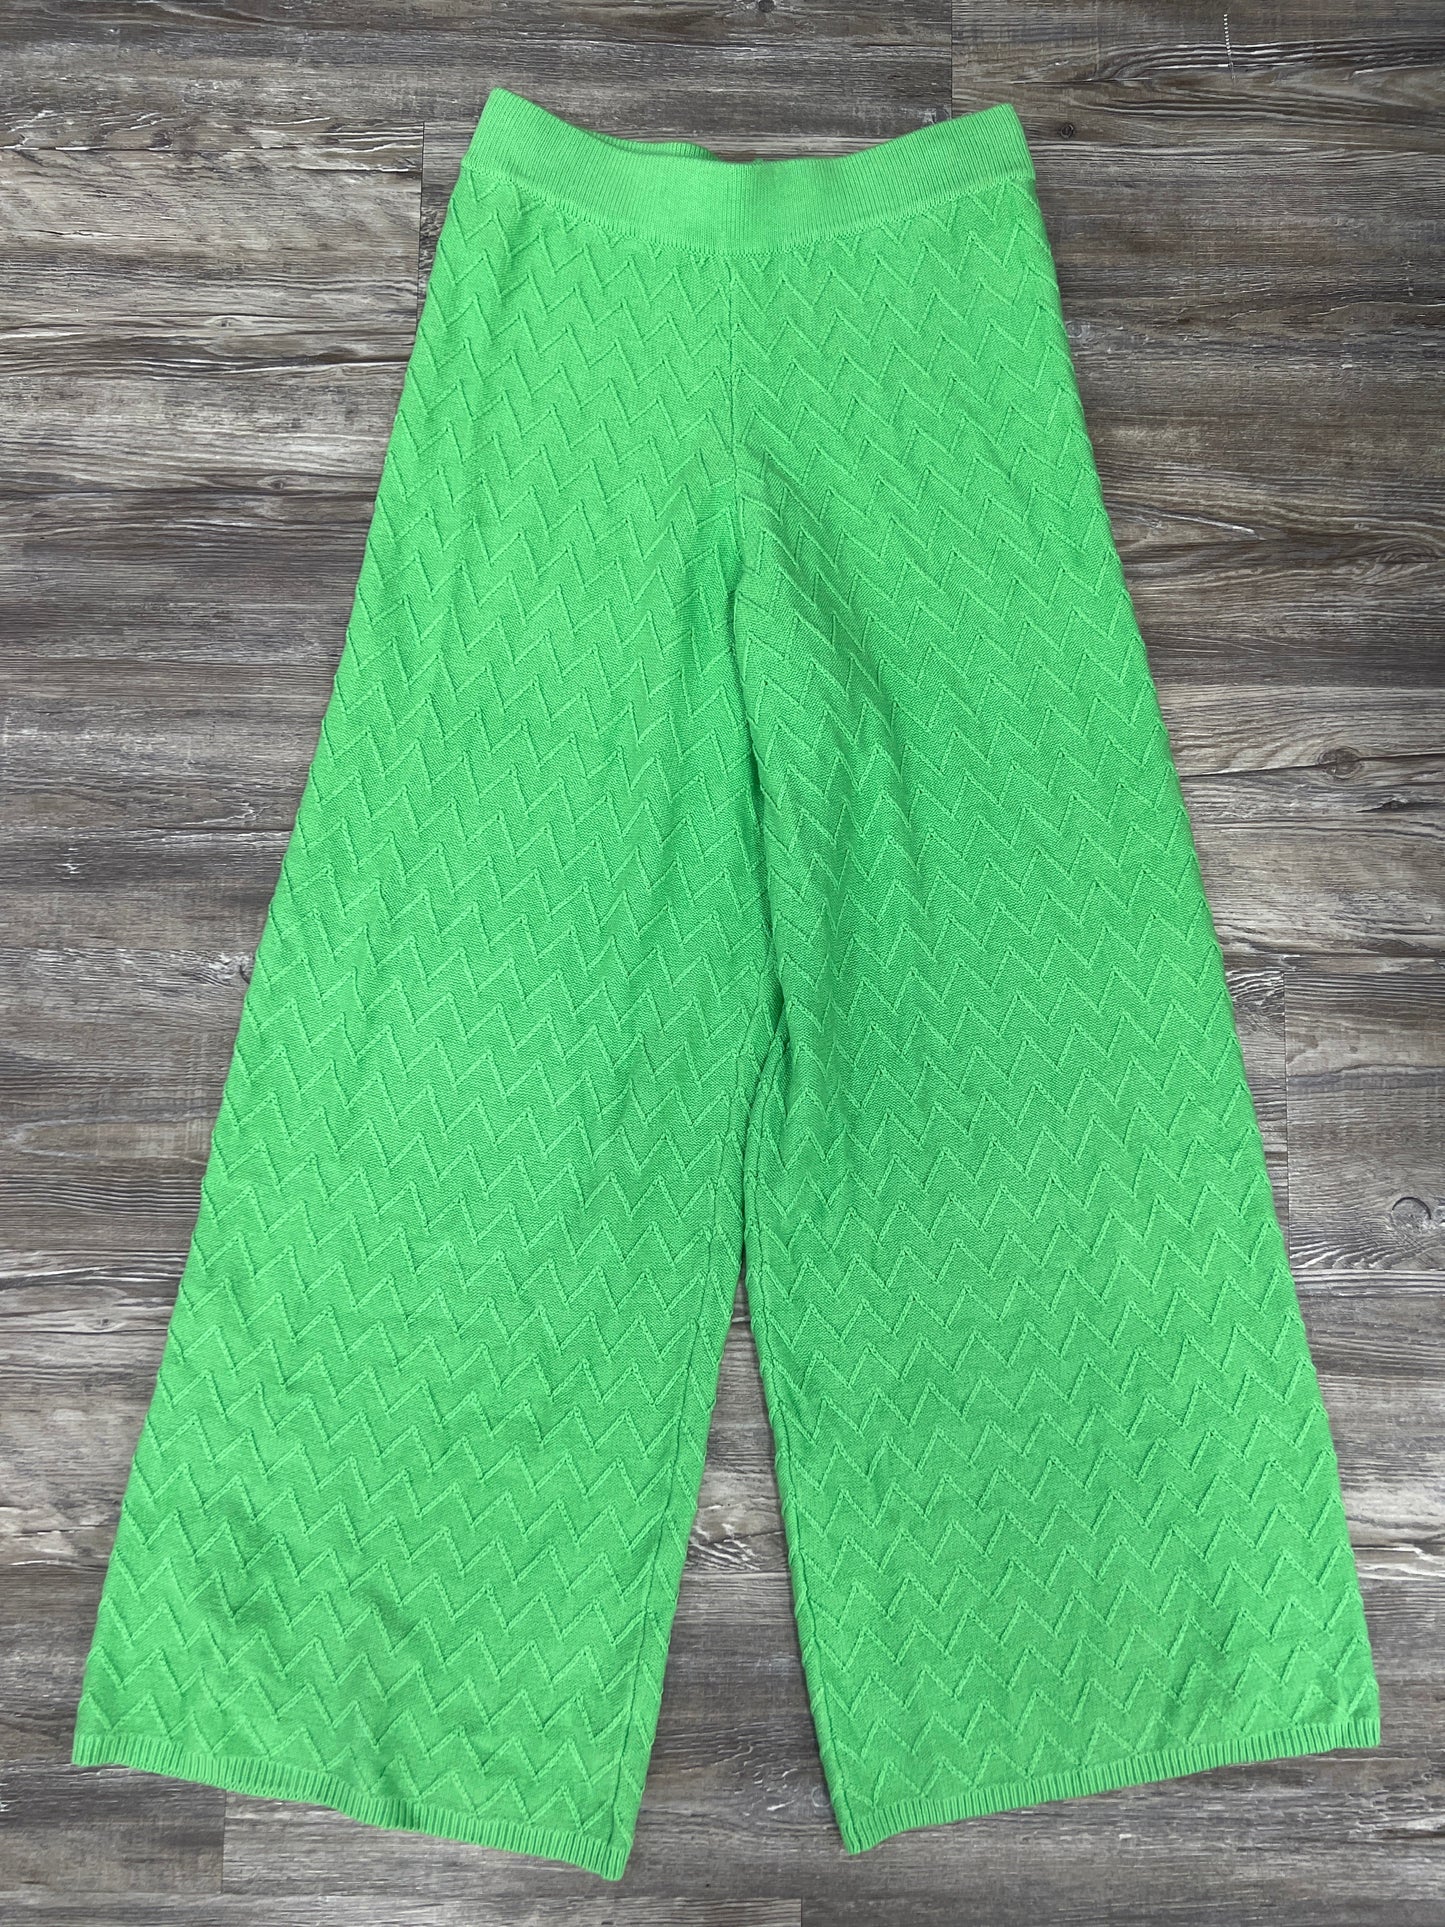 Green Pants Wide Leg Cmc, Size 8